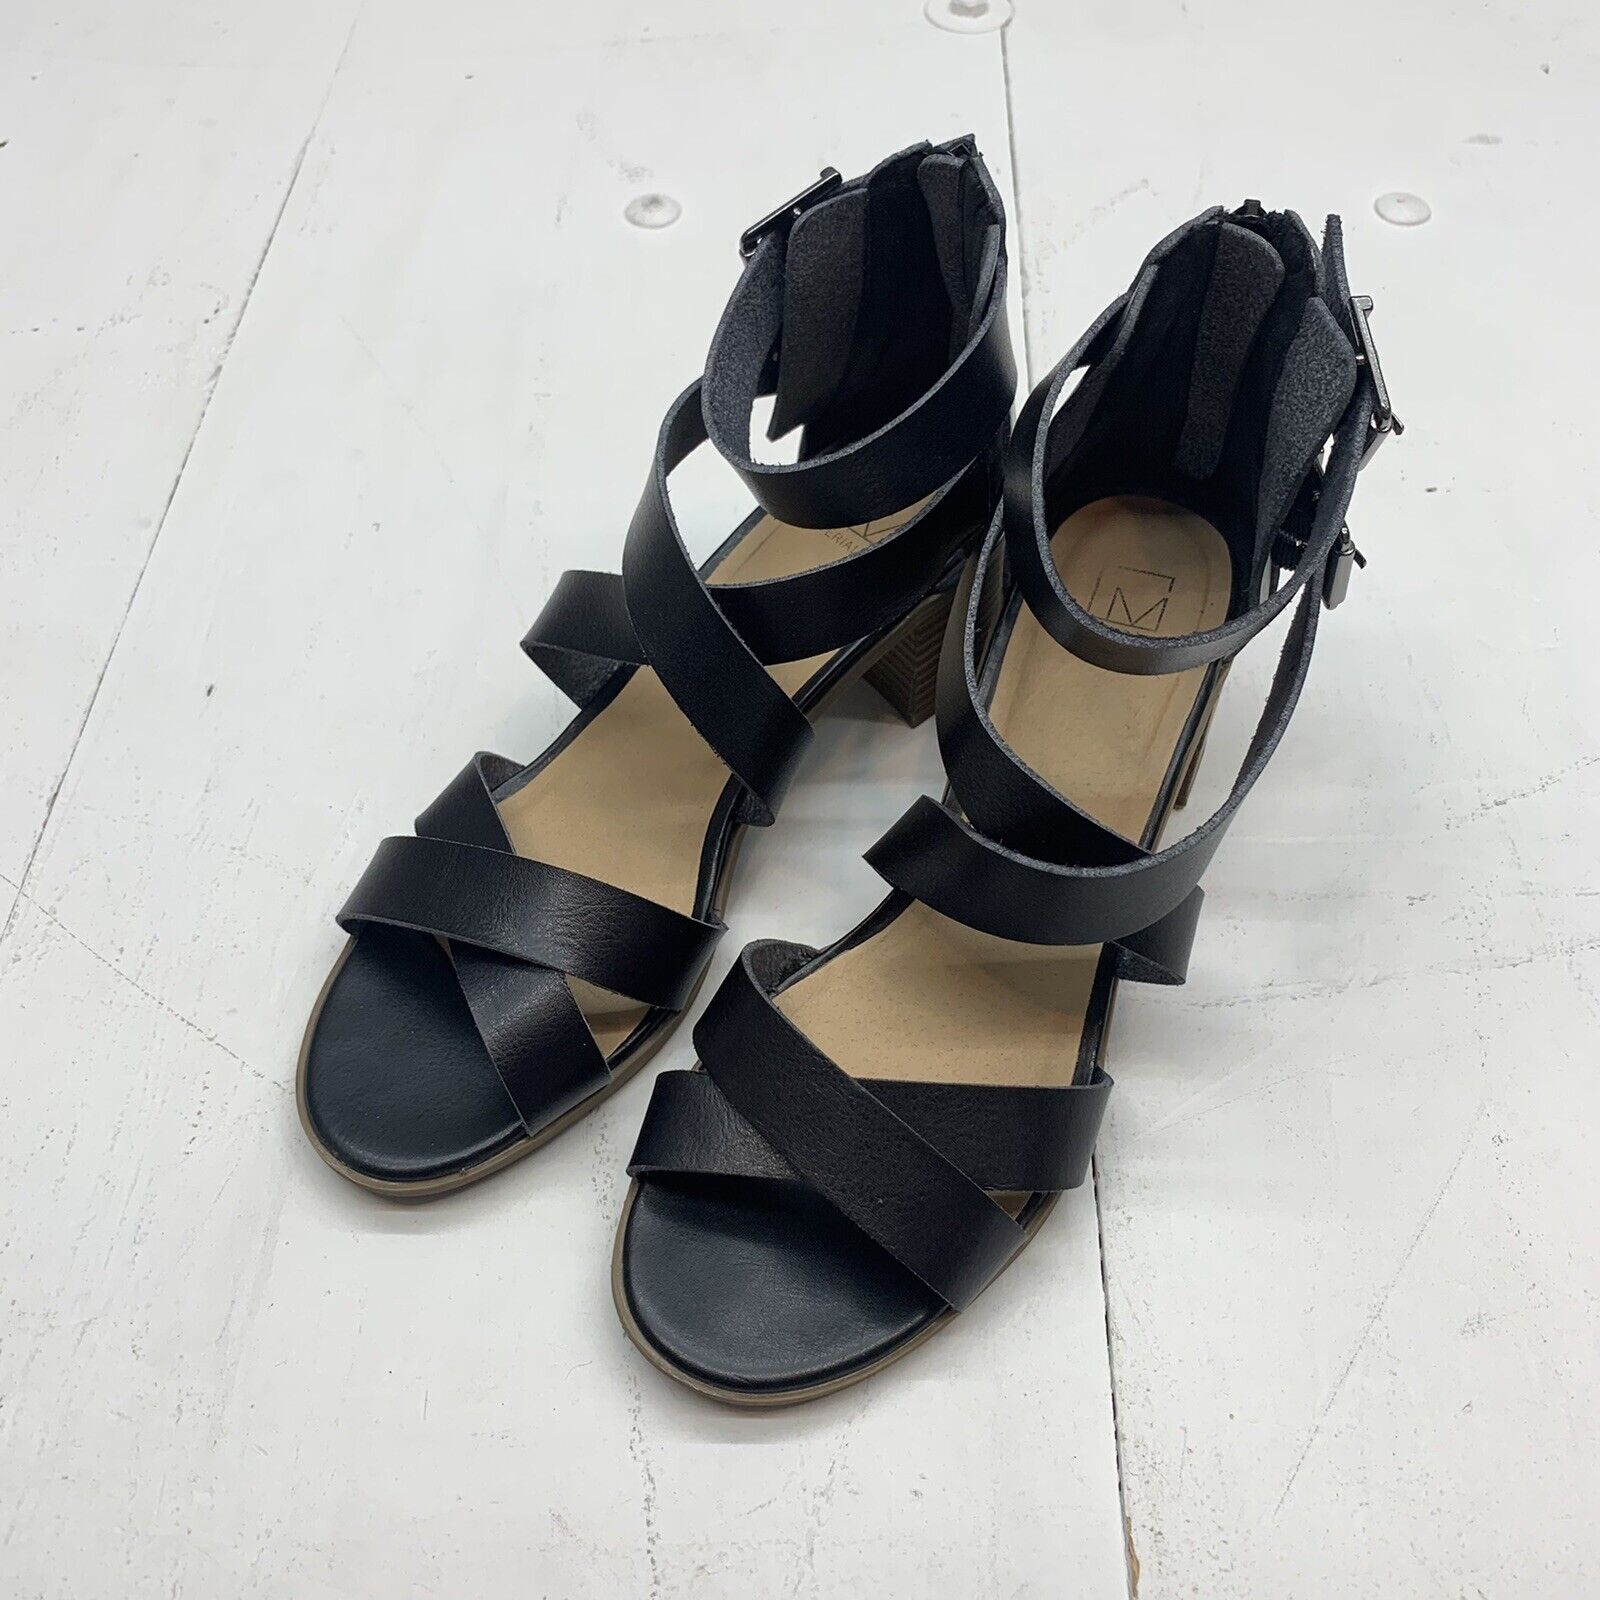 Women's High Heels. Size 9 | eBay